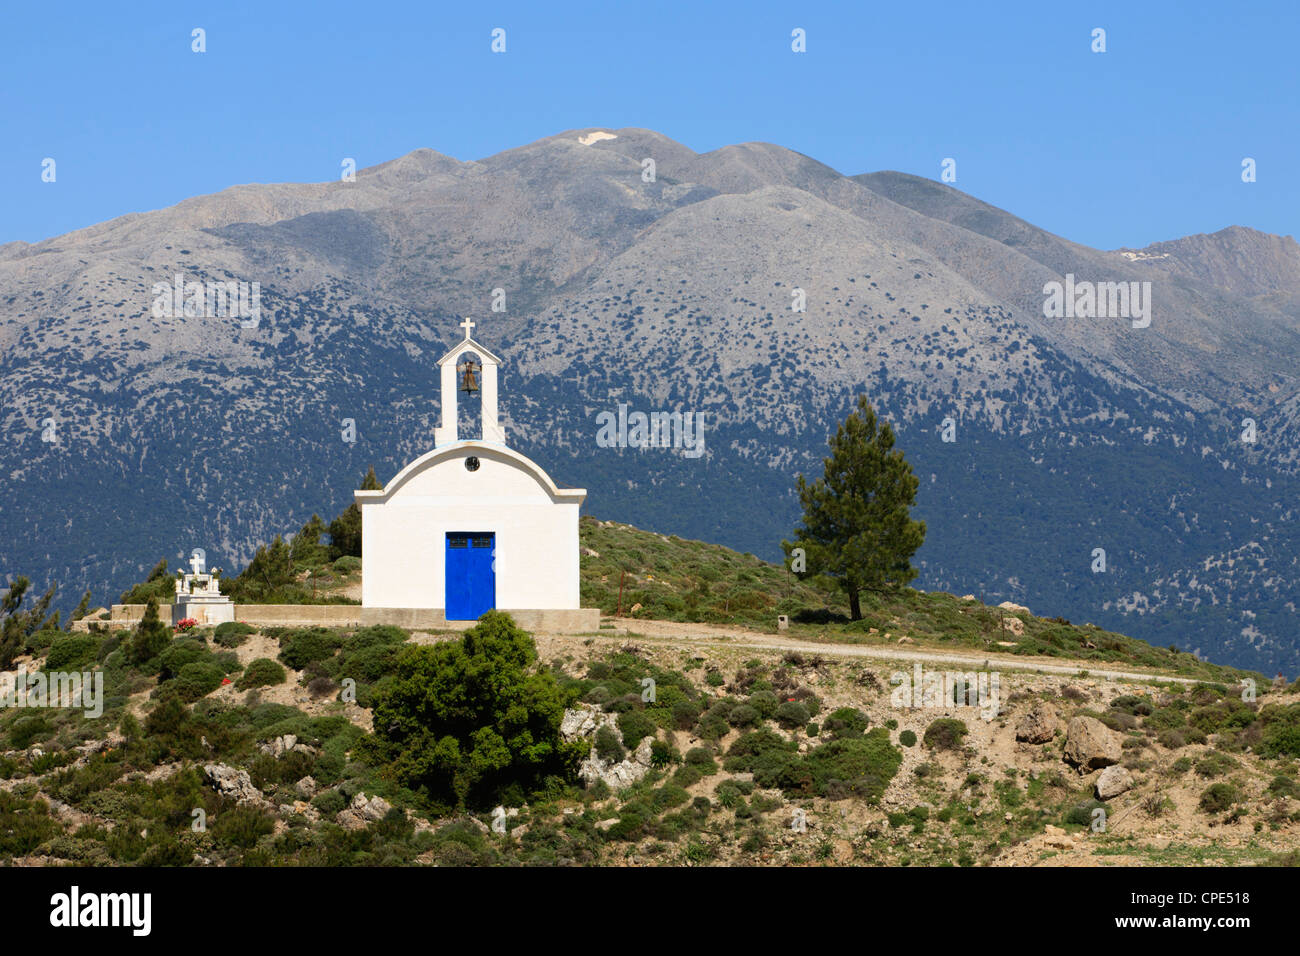 Chapelle Orthodoxe grecque, près de Maza, Montagnes Blanches (Lefka Ori), région de La Canée, Crète, îles grecques, Grèce, Europe Banque D'Images